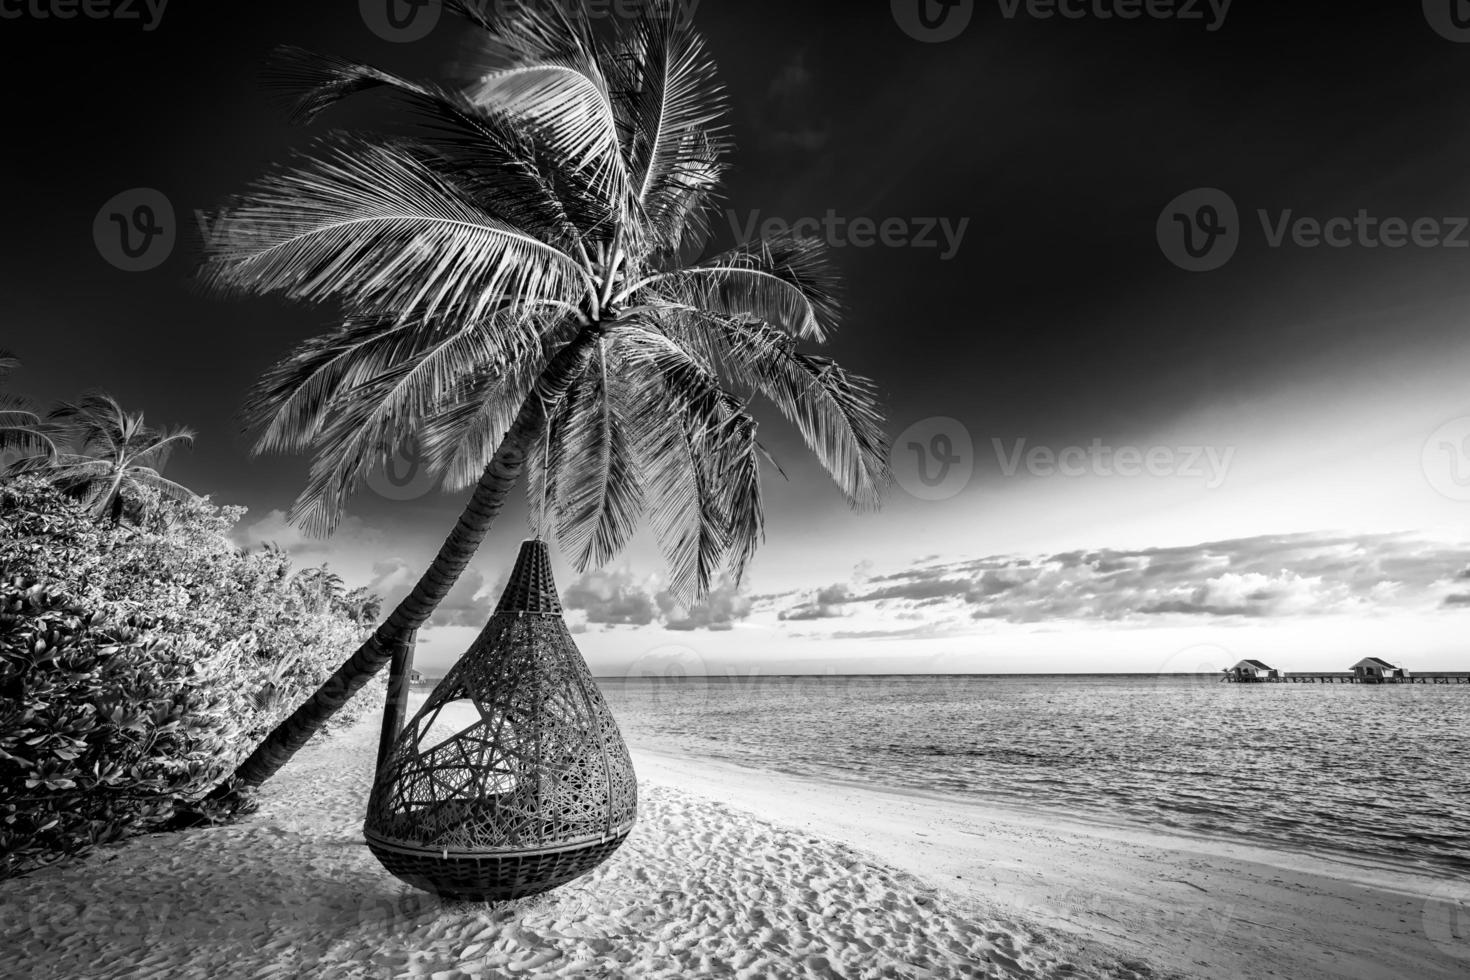 ruhiger, minimalistischer naturprozess in schwarz und weiß. künstlerischer strand palmen dunkler himmel, sonnenlicht. abstraktes einfarbiges Reisehintergrundmuster. kokospalmen sommer dunkel dramatisch meditation energie foto